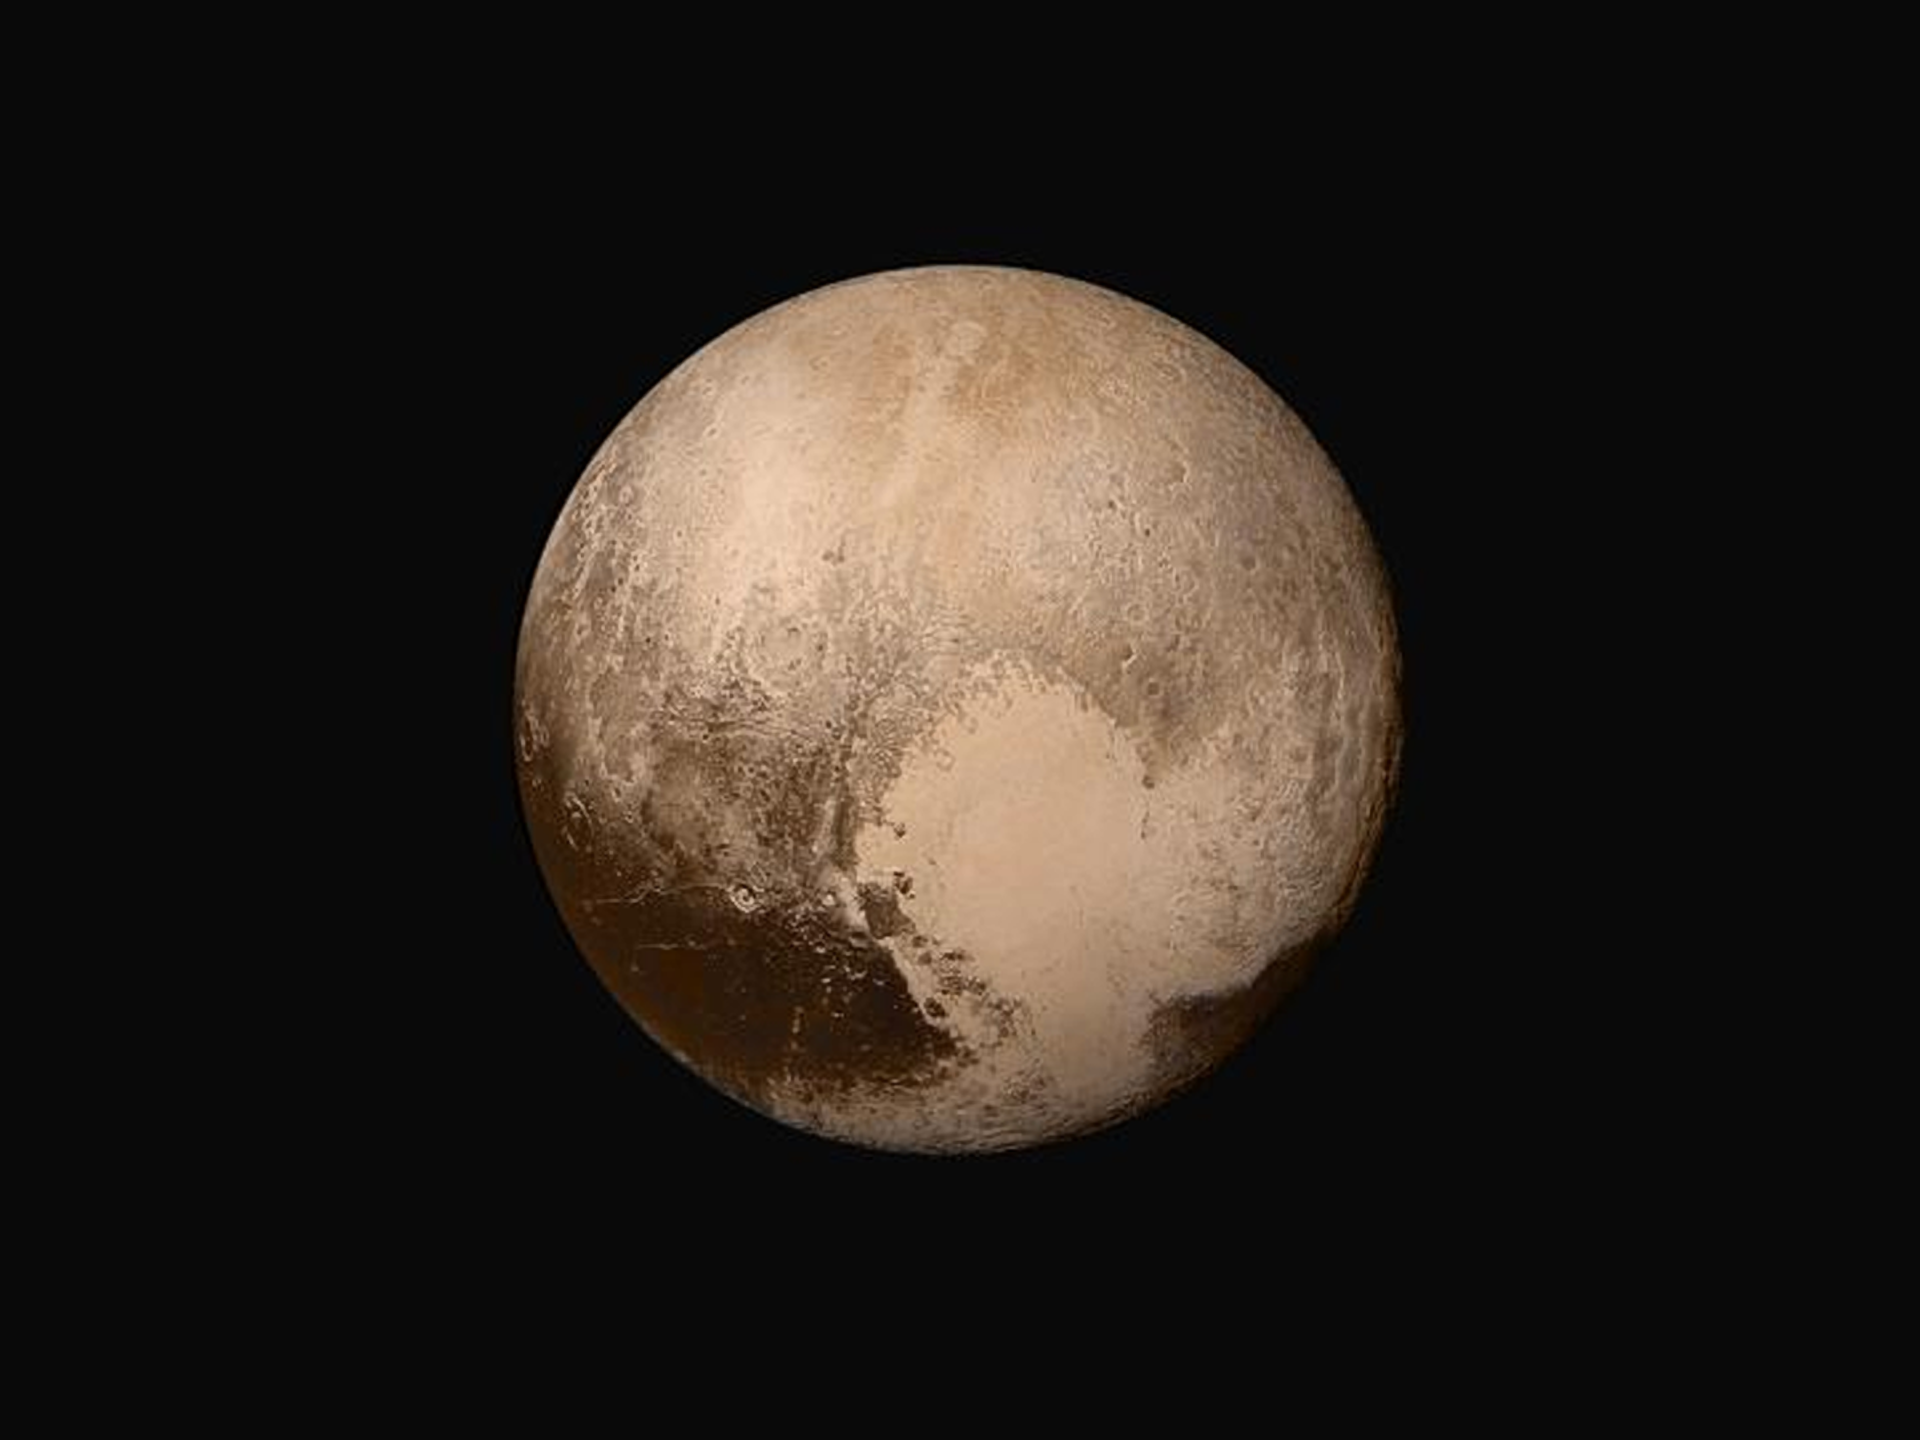 Rys. 8. Zdjęcie poglądowe, wykonane przez sondę kosmiczną New Horizons, przedstawia planetę Pluton w jej prawdziwych kolorach. Kolorem dominującym jest brunatno‑brązowy, który pokrywa kremowo‑beżowy "podkład" całej planety. Pluton ma masę 1,3 razy 10²² kg oraz średnicę 2370 km. Ze względu na niewielkie rozmiary oraz ekscentryczną orbitę, został zaklasyfikowany do grupy planet karłowatych. Pluton porusza się po orbicie wokół Słońca, w tym samym kierunku, co inne planety, ale obraca się wokół własnej osi przeciwnie niż większość planet (z wyjątkiem Wenus i Urana). Podobnie jak Uran, obraca się w pozycji poziomej (oś obrotu nachylona jest do płaszczyzny orbity pod kątem prawie 120 stopni). Dzień na Plutonie trwa 6,39 ziemskich dni, natomiast plutoński rok trwa 248,23 lat ziemskich. Dopiero w 2015 roku do Ziemi dotarły pierwsze zdjęcia wykonane przez tę sondę. Świat obiegło pierwsze zdjęcie Plutona, na którym widać jego struktury i zróżnicowanie powierzchni. Najbardziej charakterystyczny region widoczny na zdjęciach nazywano sercem Plutona – oficjalna nazwa to Sputnik Planitia. Możesz to serce zobaczyć na fotografii umieszczonej w tym e‑materiale (Rys. 8.). Mimo krótkiego przelotu sondy udało się dokonać wielu ciekawych odkryć. Pluton, z racji swojej odległości od źródła ciepła (Słońca) oraz bardzo cienkiej atmosfery, składa się w dużej mierze z lodu. Temperatura, jaka panuje na jego powierzchni, waha się pomiędzy -240°C a -226°C.